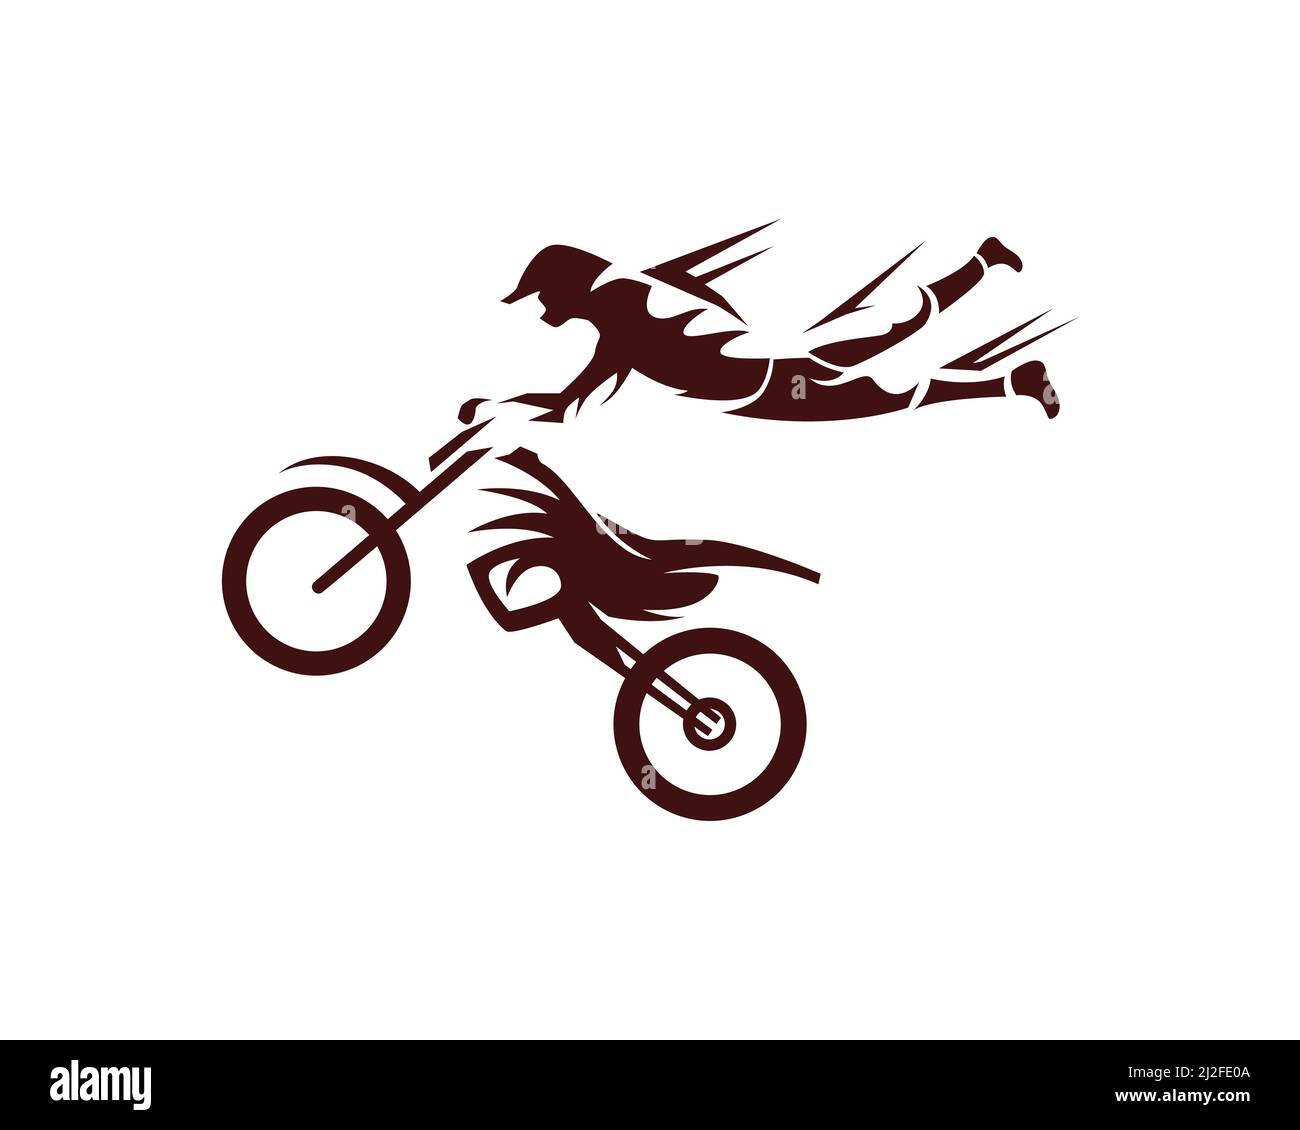 Jumping Motocross Rider Illustration Vector Stock Vector